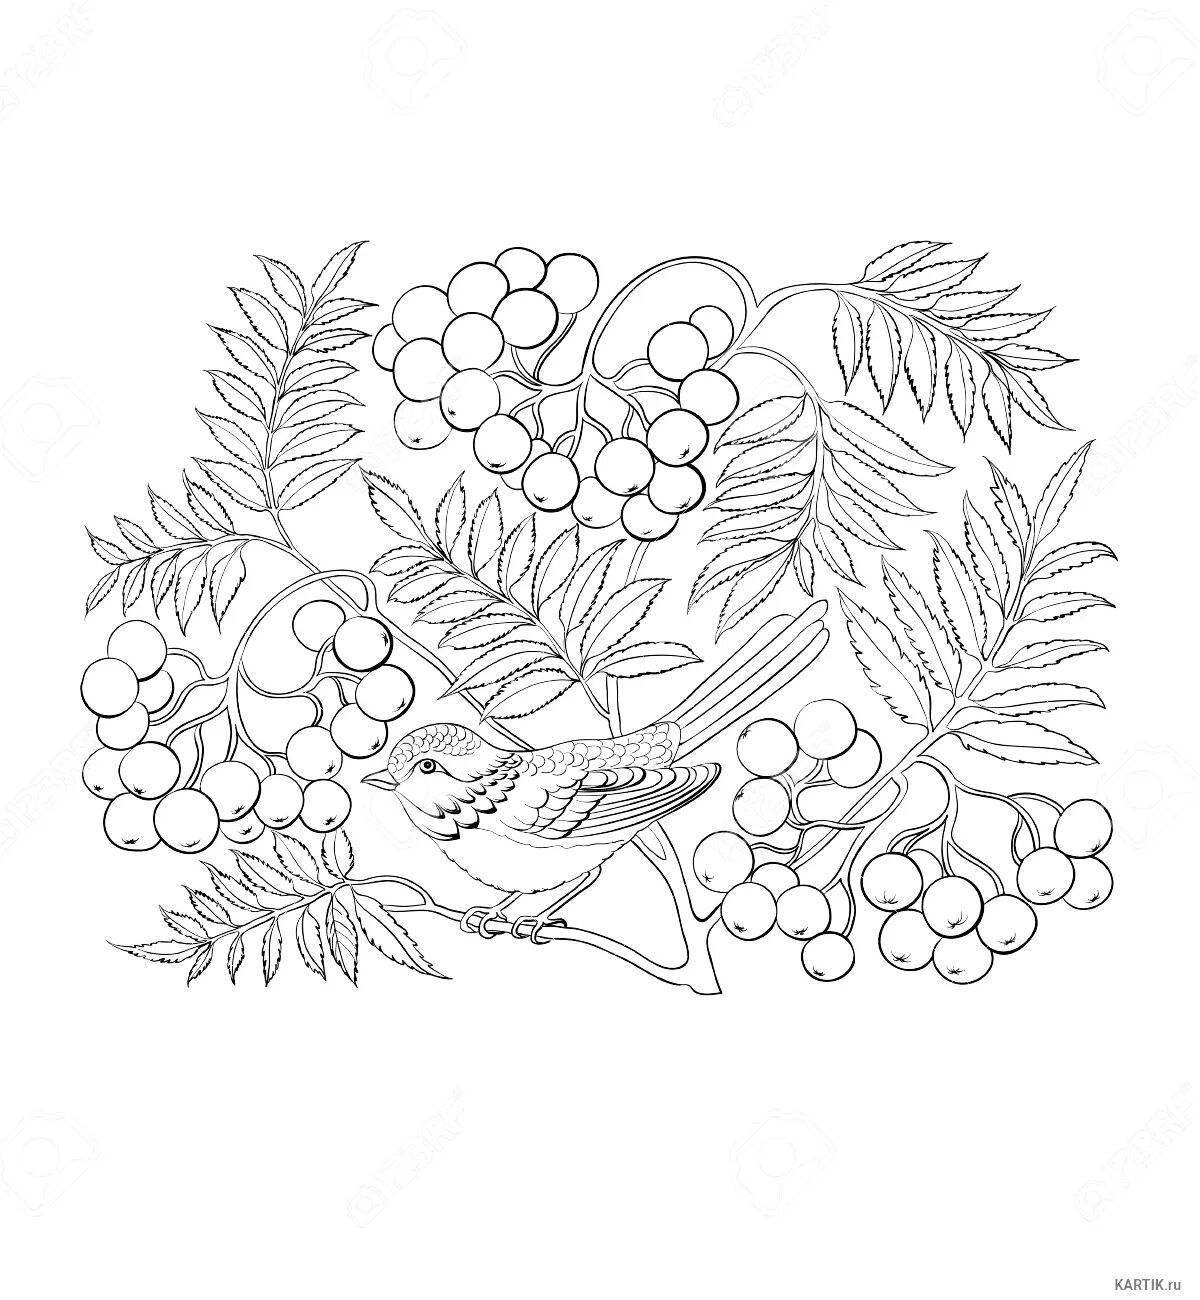 Glorious rowan berries coloring page